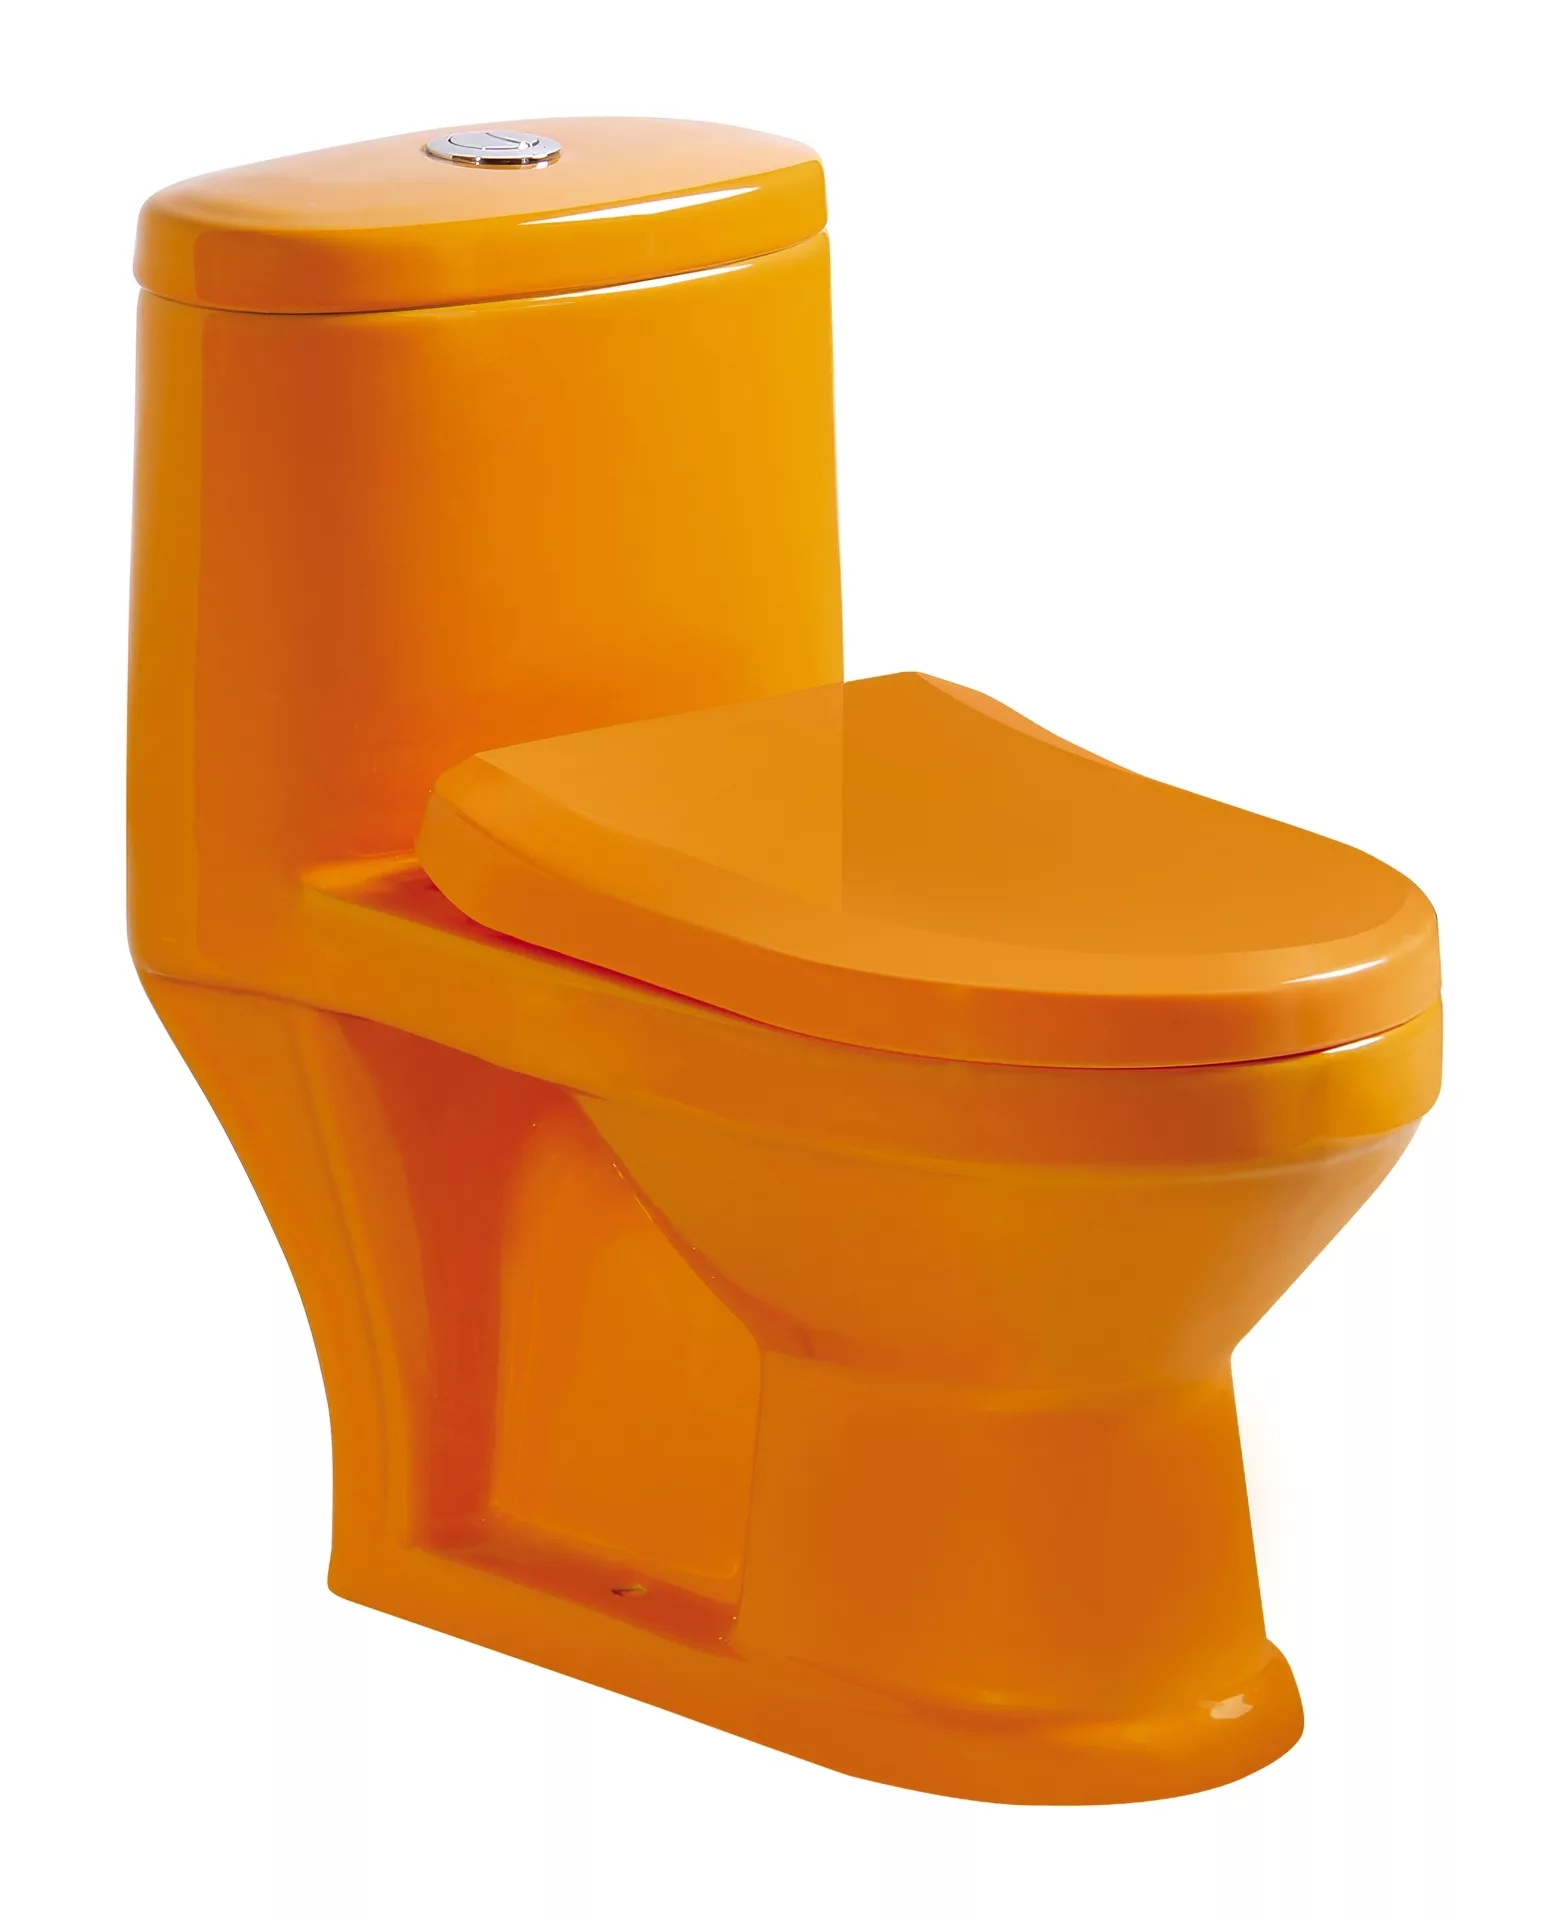 Унитаз GiD Tr2192or напольный детский оранжевый керамический сиденье на унитаз оранжевый